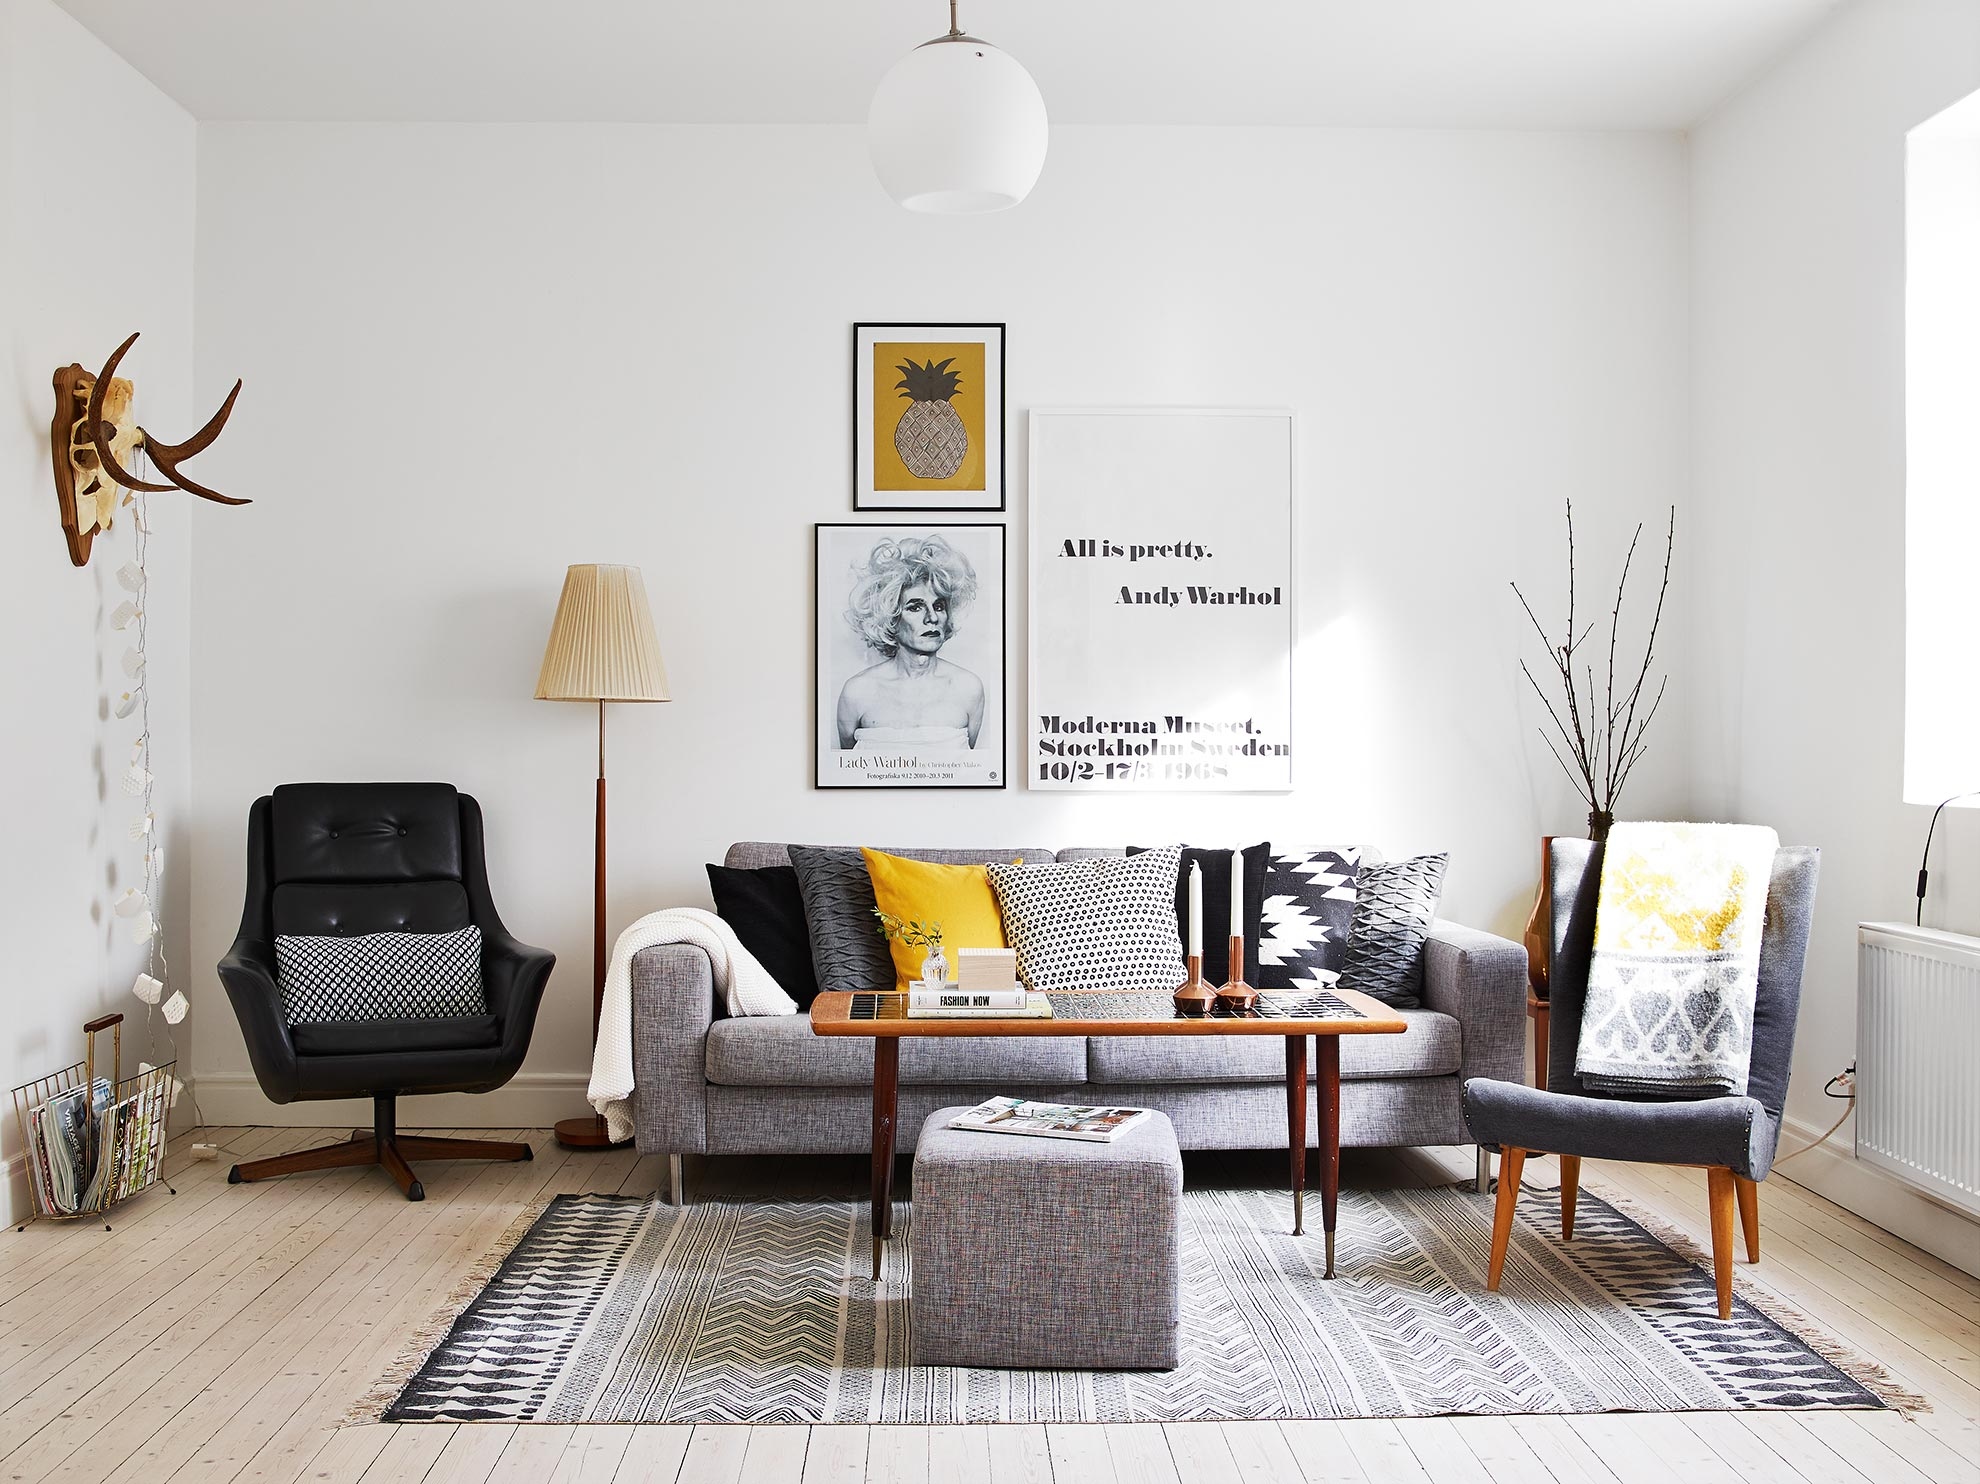 delikatissen vintage estilo muebles diseño danes 50 60 mid-century modern estilo danés de los 50 -60 estilo 'Mad Men diseño danés muebles Decorar con amarillo y gris decoración nórdica vintage decoracion diseño interiores 